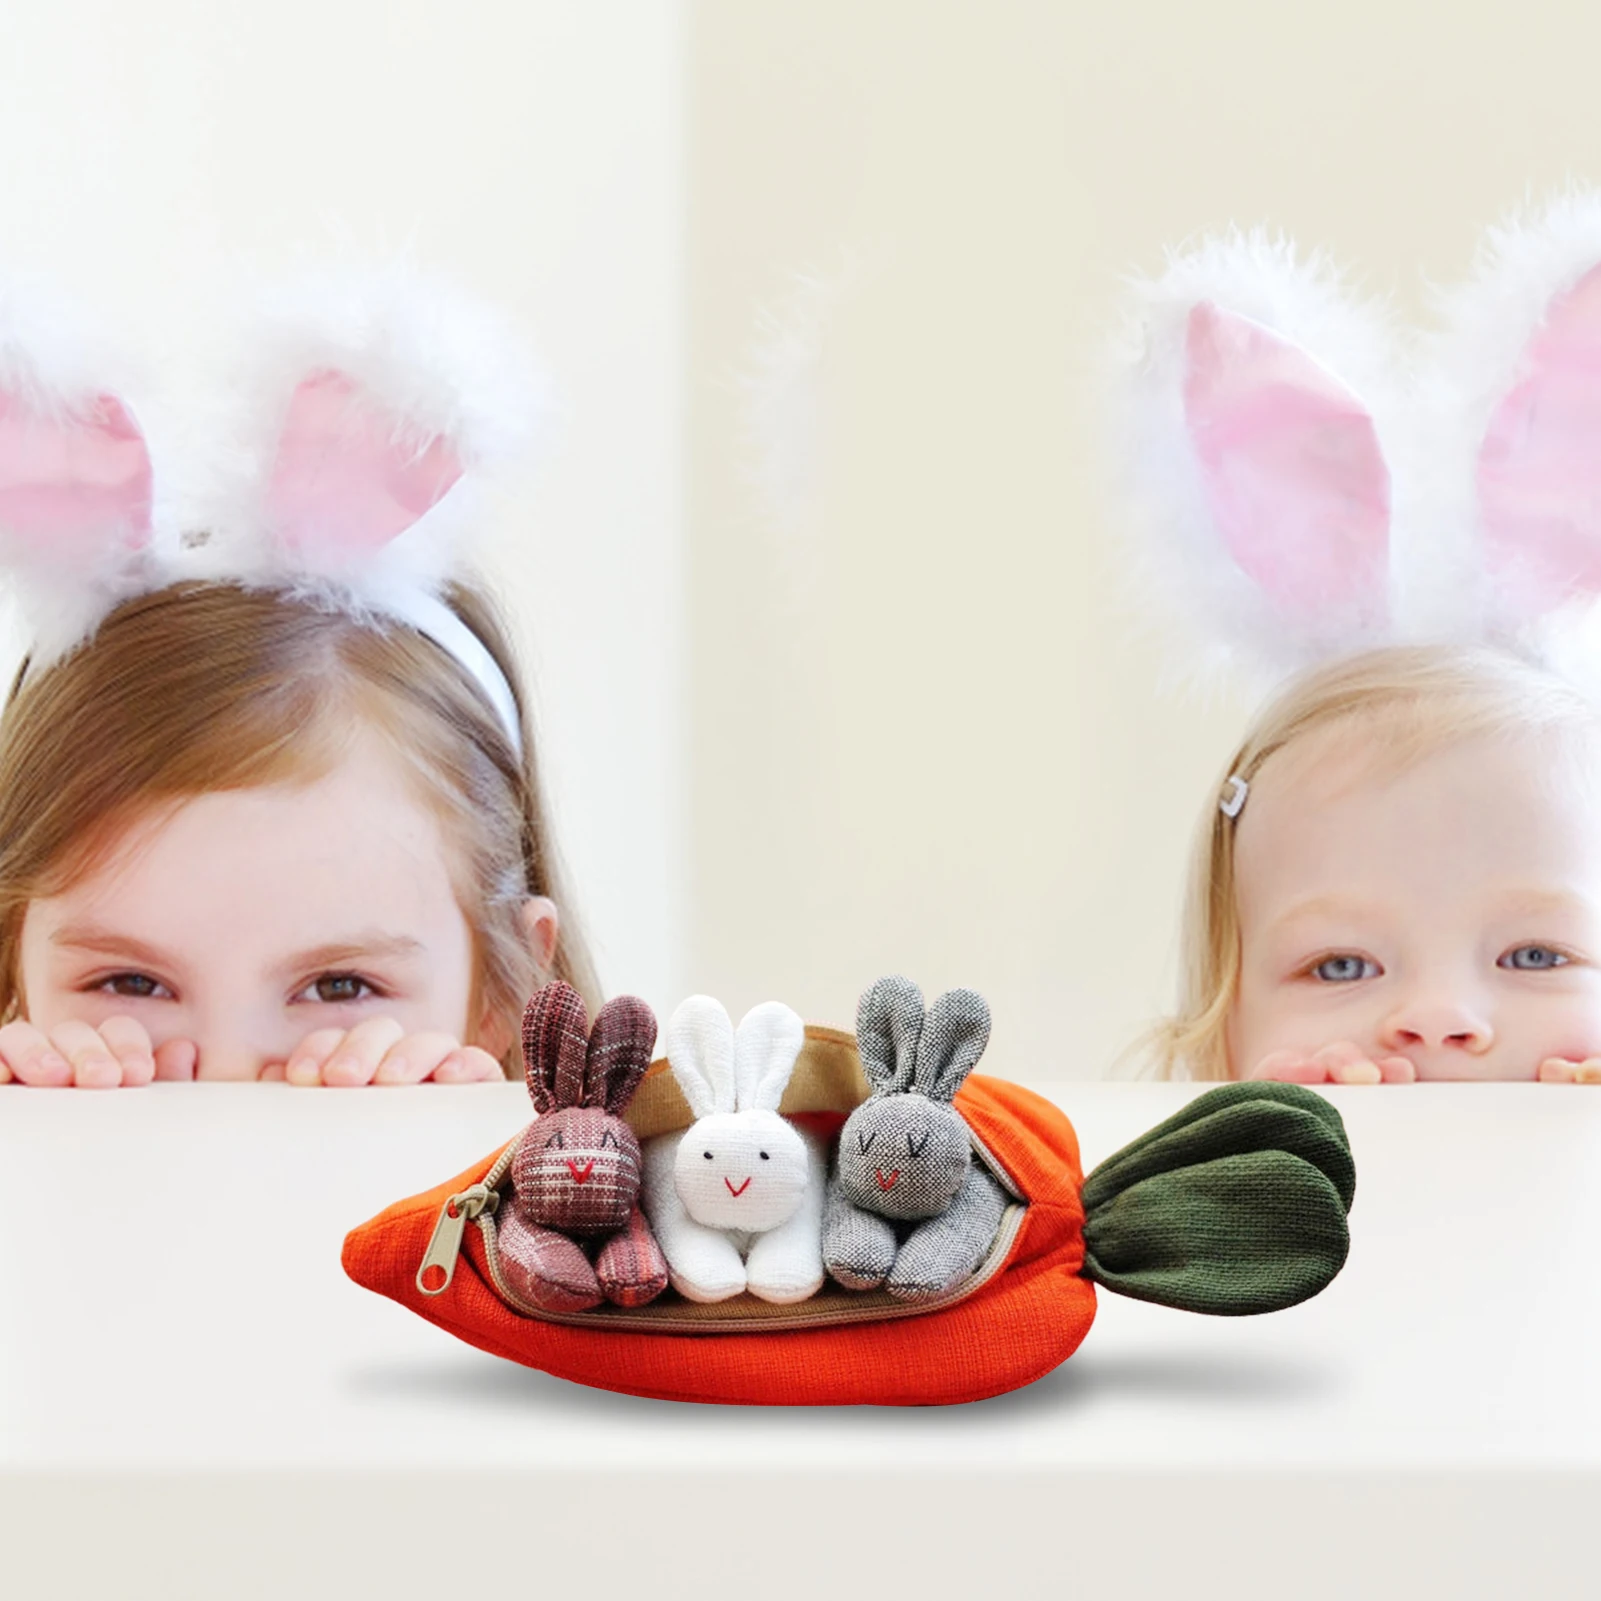 

3 кролика в сумочке с морковкой, пасхальный подарок для детей, домашнее праздничное настольное украшение с милым Кроликом, плюшевая кукла, и...